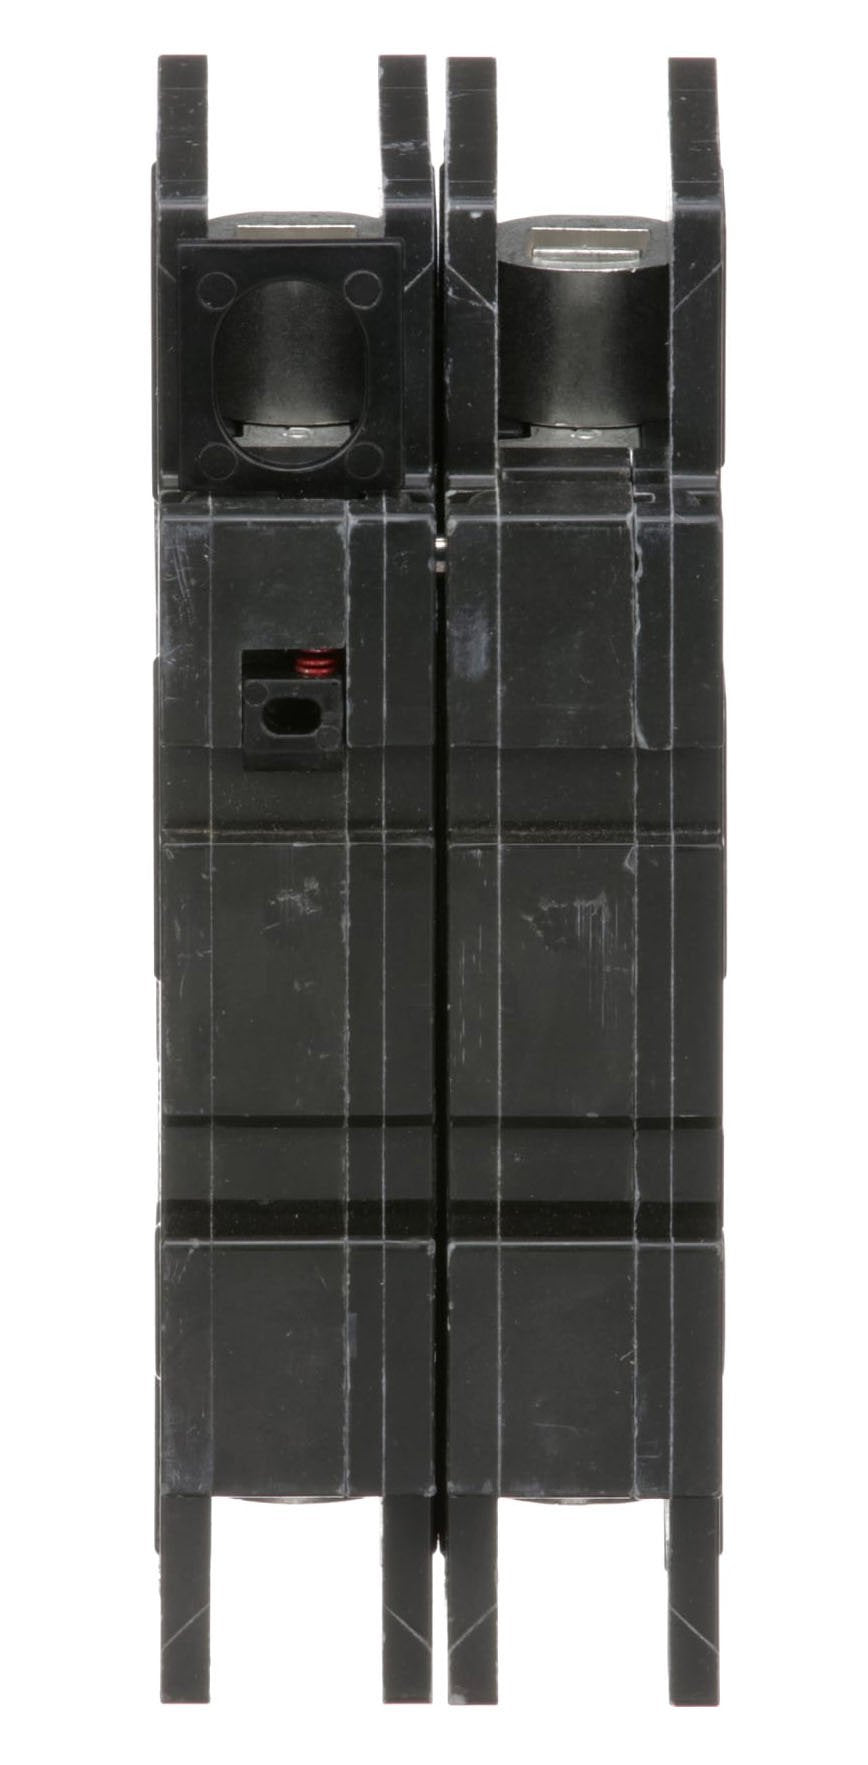 QOU210 - Square D - 10 Amp Circuit Breaker